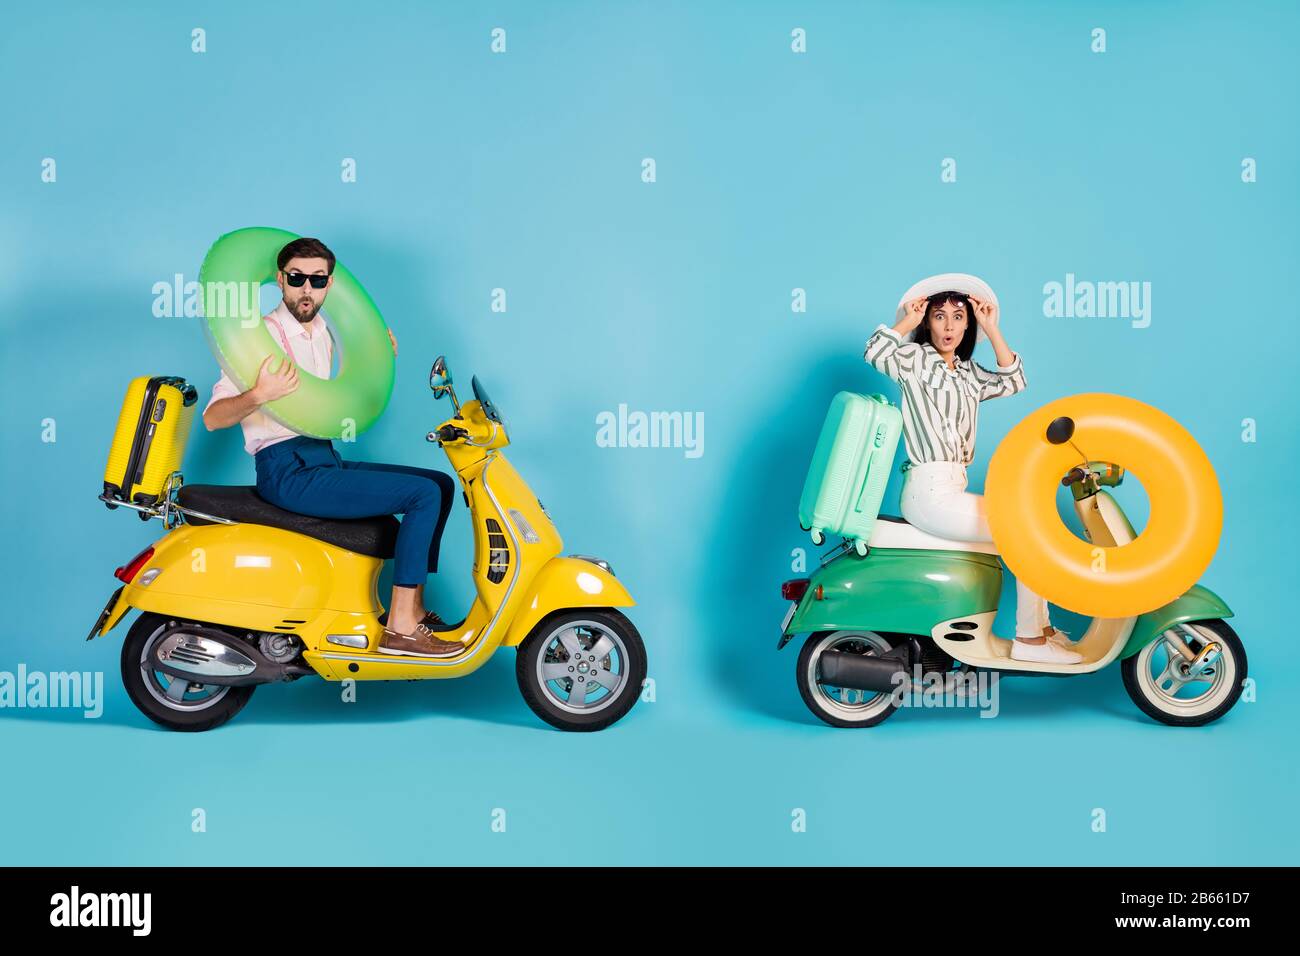 Ganzkörperprofil Seitenfoto von überraschten zwei Fahrern Fahrer reisen Sommerferien Seeküste Motorrad tragen Ring Gummi Leben Bojensäcke Stockfoto